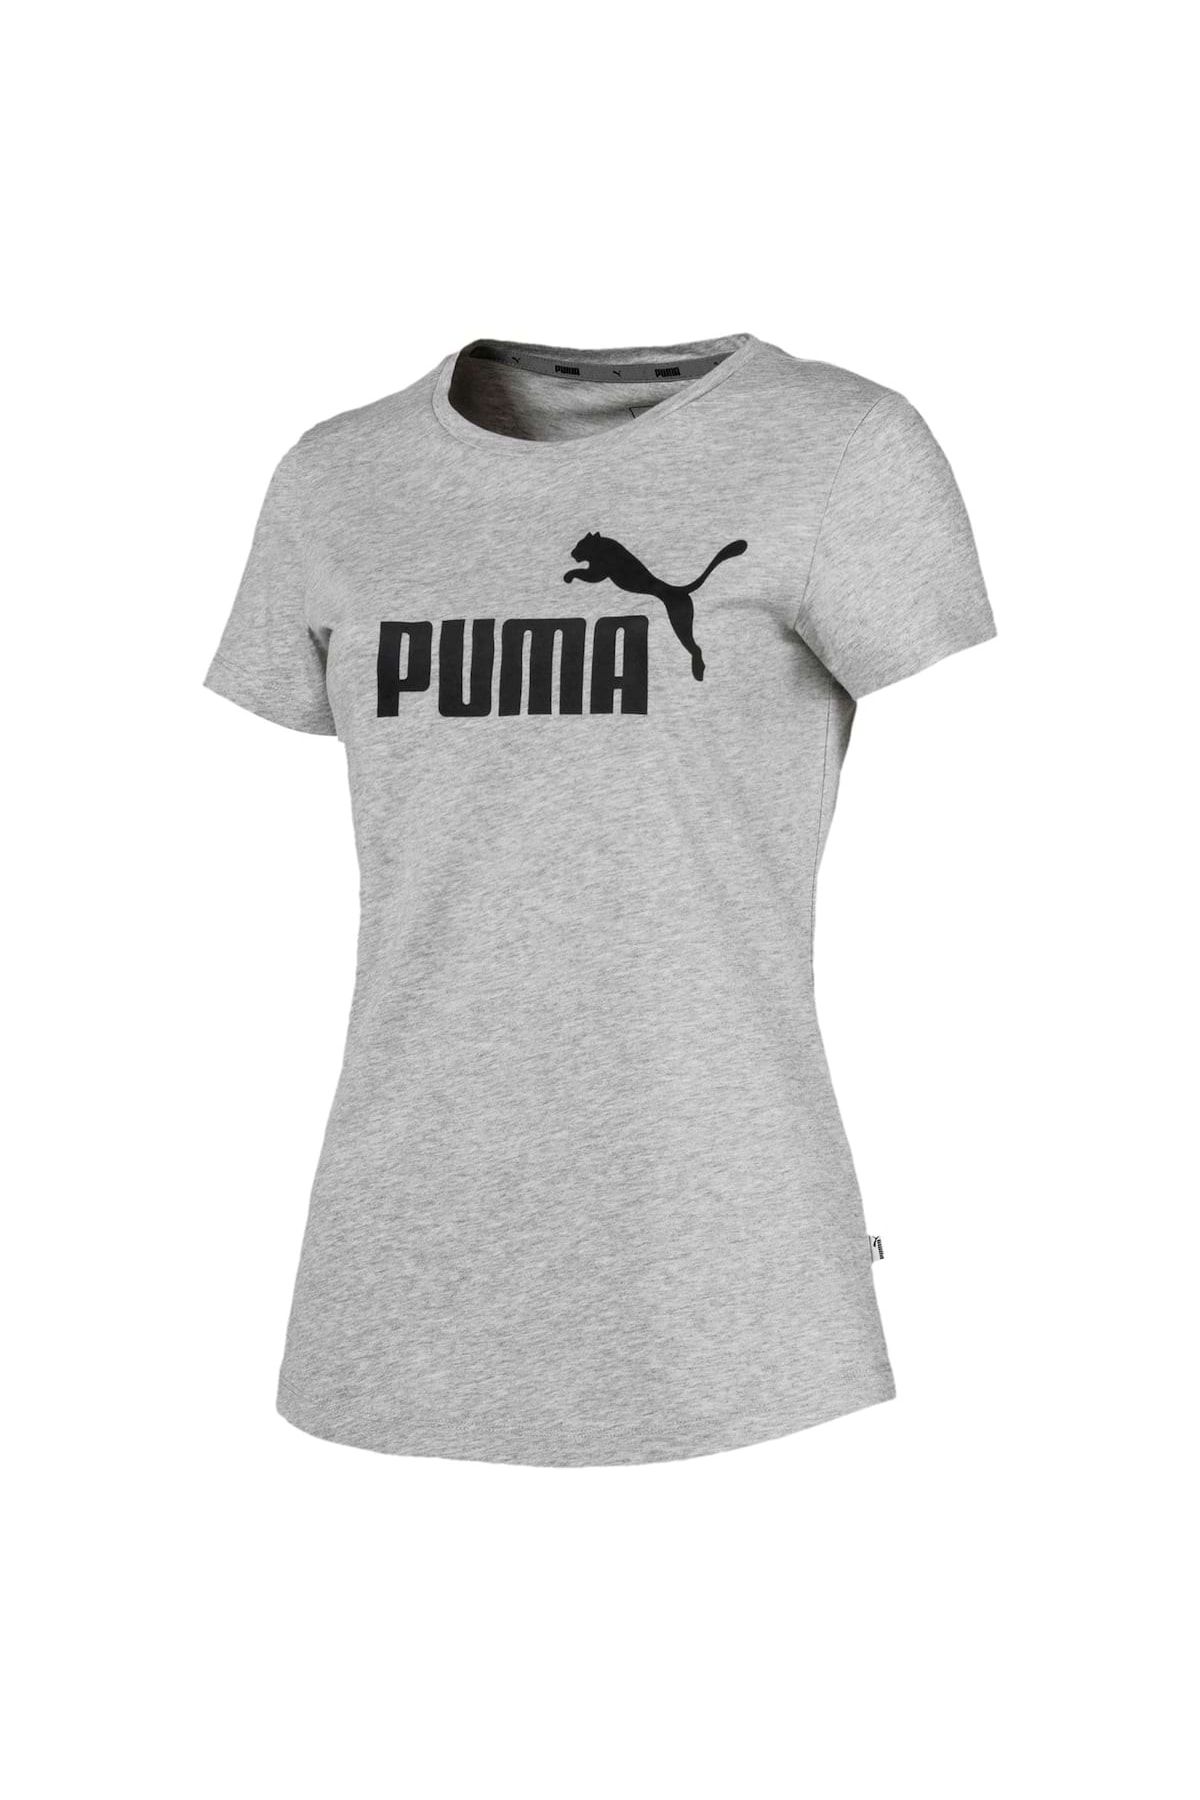 Tee, T-Shirt Kurzarm, Logo Trendyol Puma - Rundhals, Essentials Damen uni -